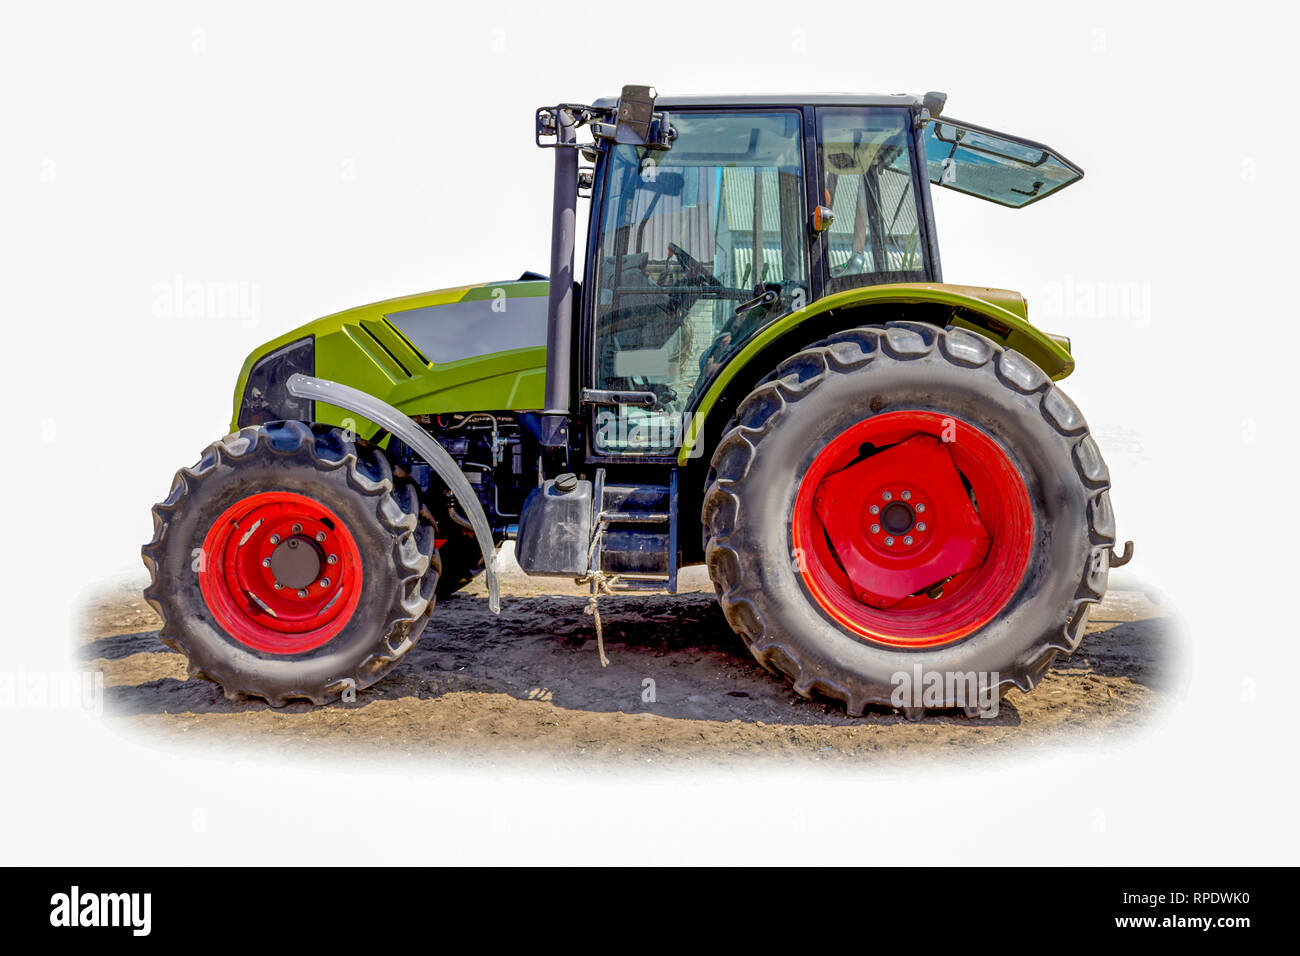 Leistungsstarke Traktor für verschiedene landwirtschaftliche Arbeiten. Fotos von der Seite einer landwirtschaftlichen Maschine. Notwendige Ausrüstung für eine Molkerei. Isolierte Bild. Stockfoto